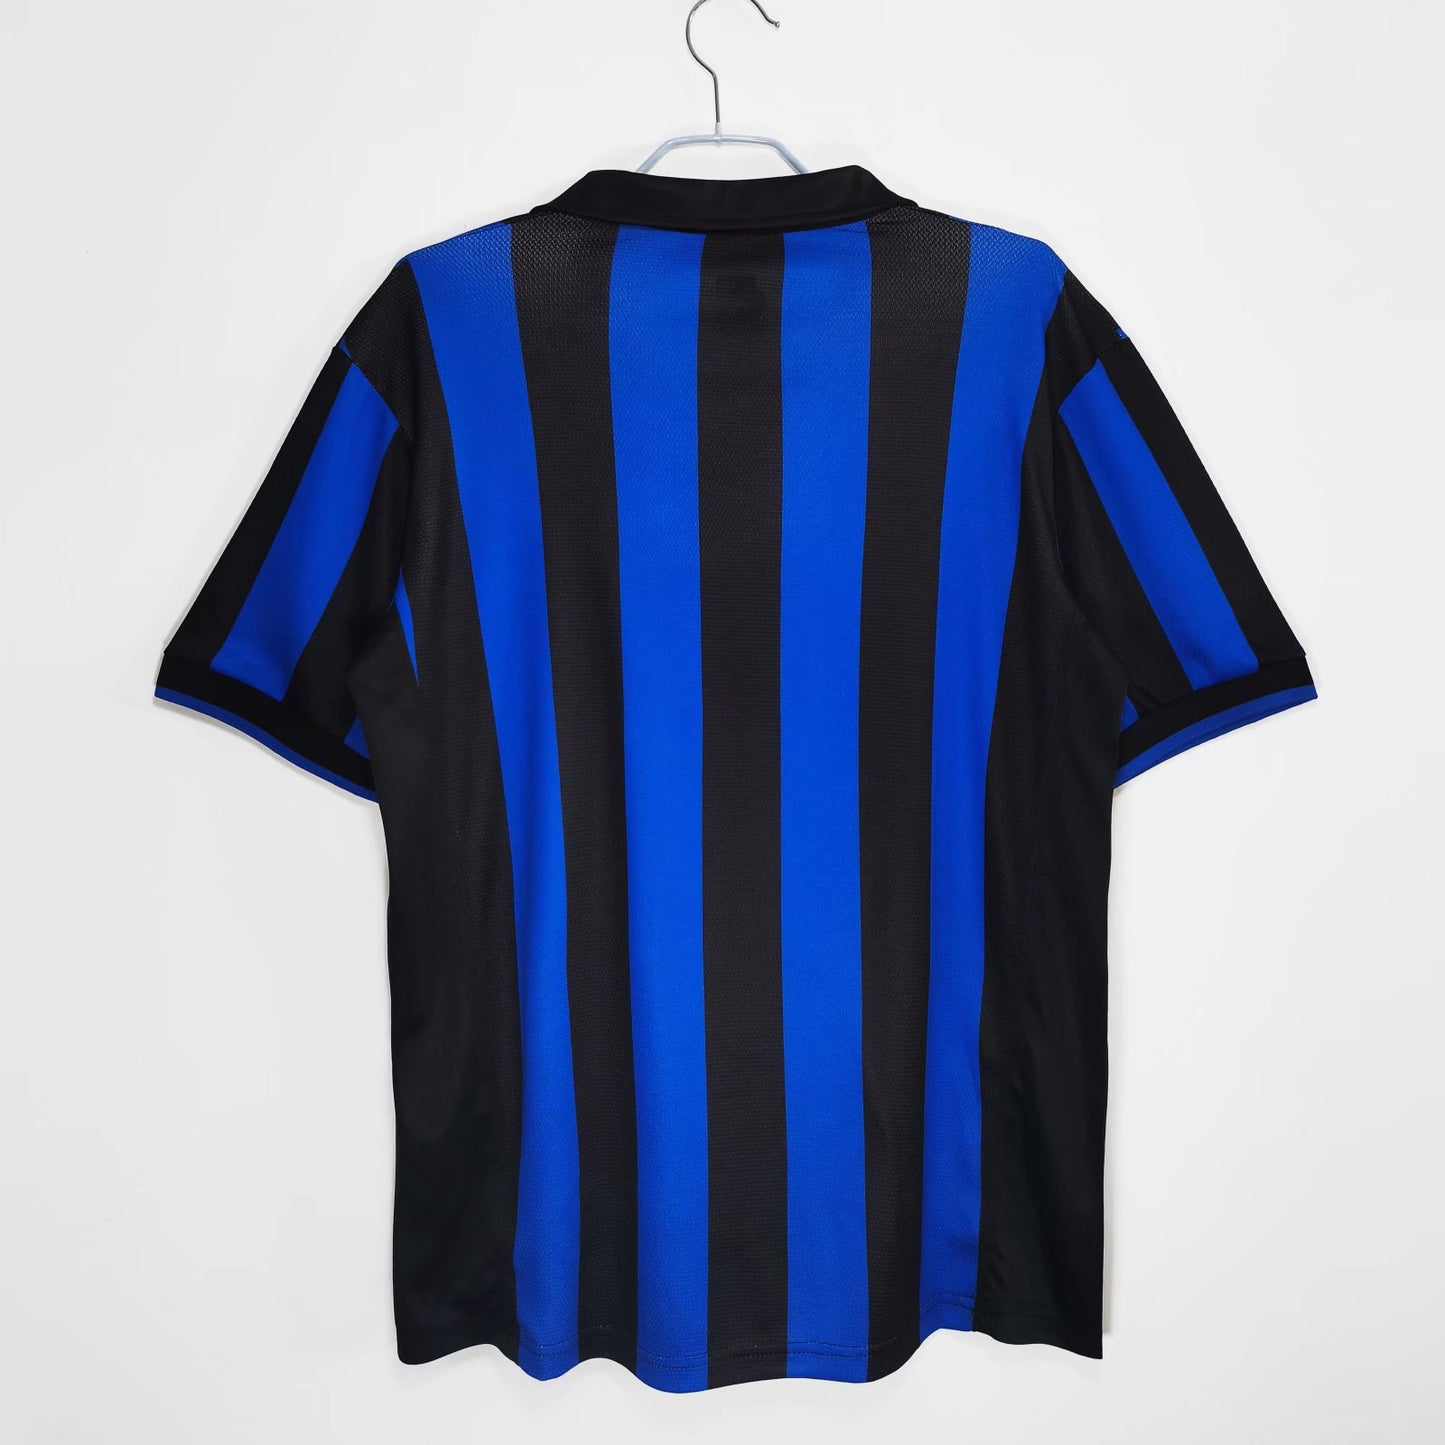 1998/99 Season Inter Milan Home Kit